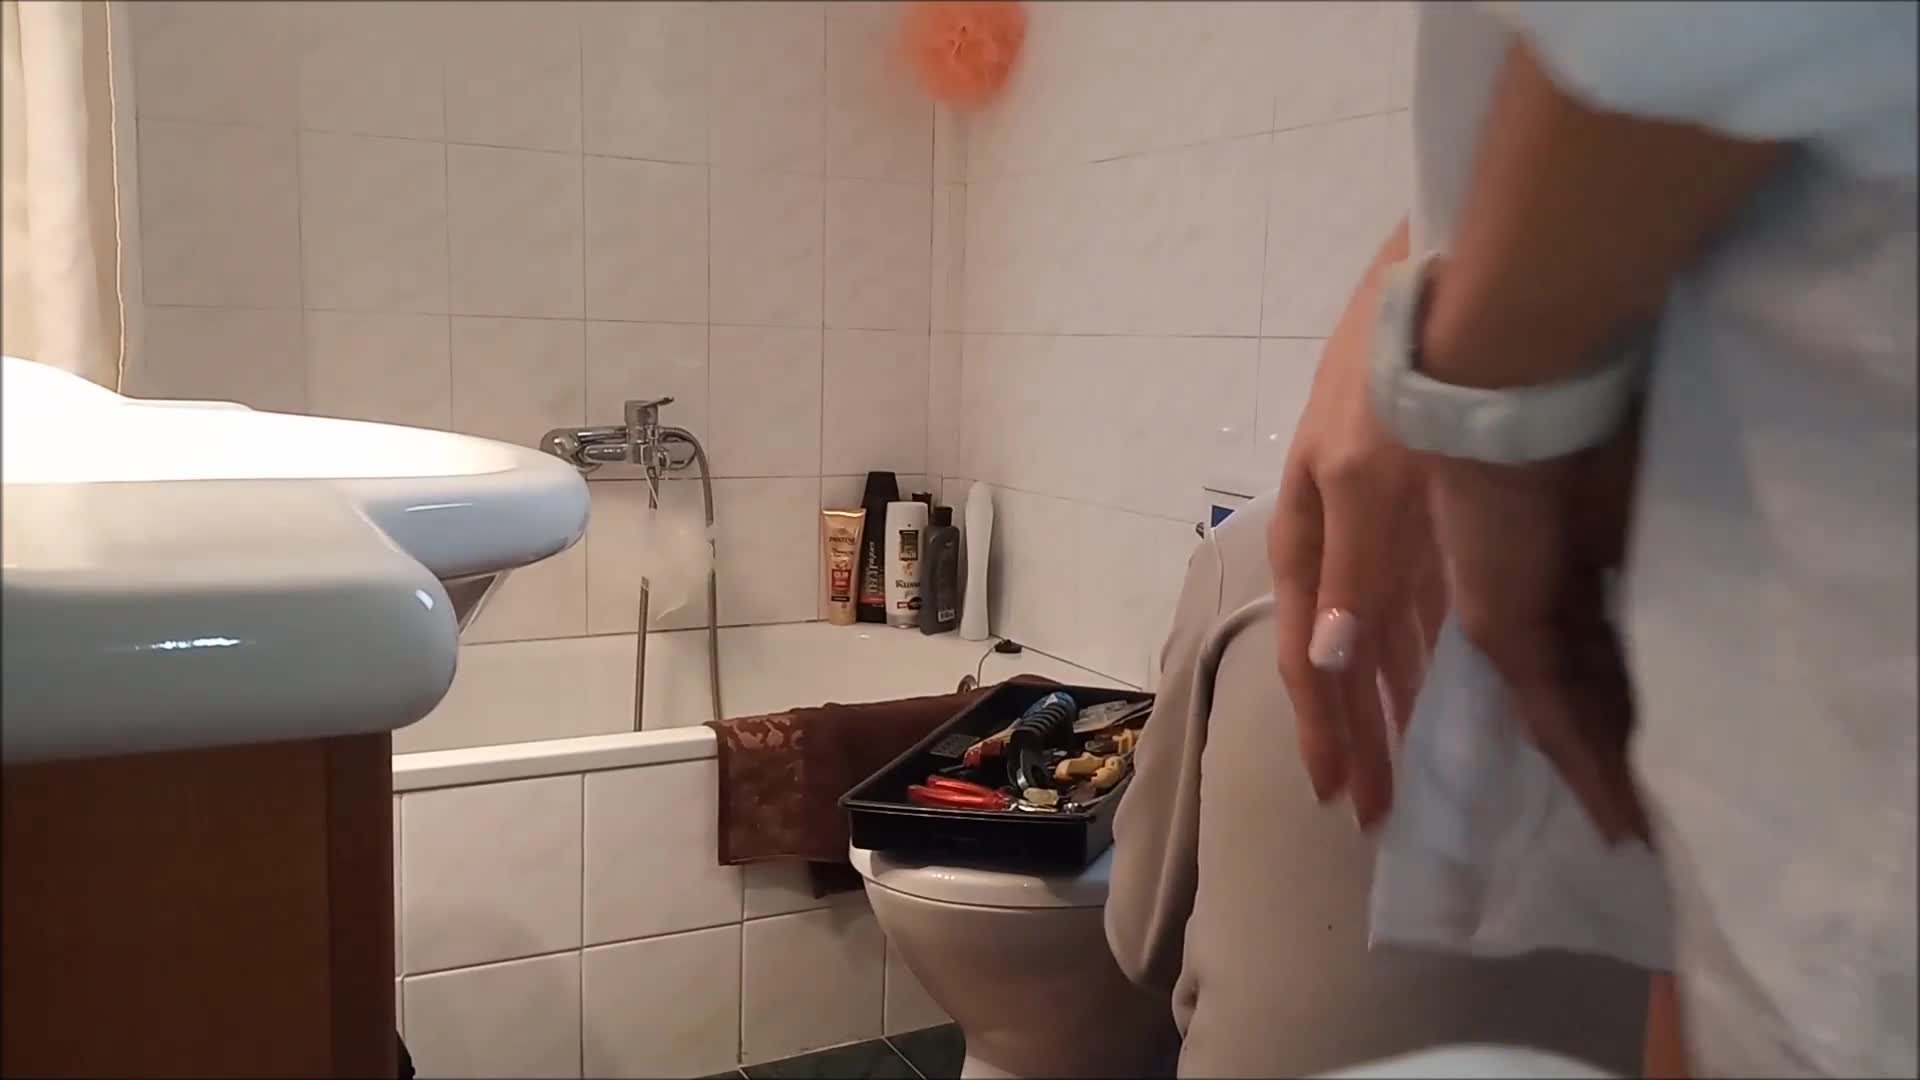 todellinen tirkistelijä wc -nokka Pornokuvat Hd